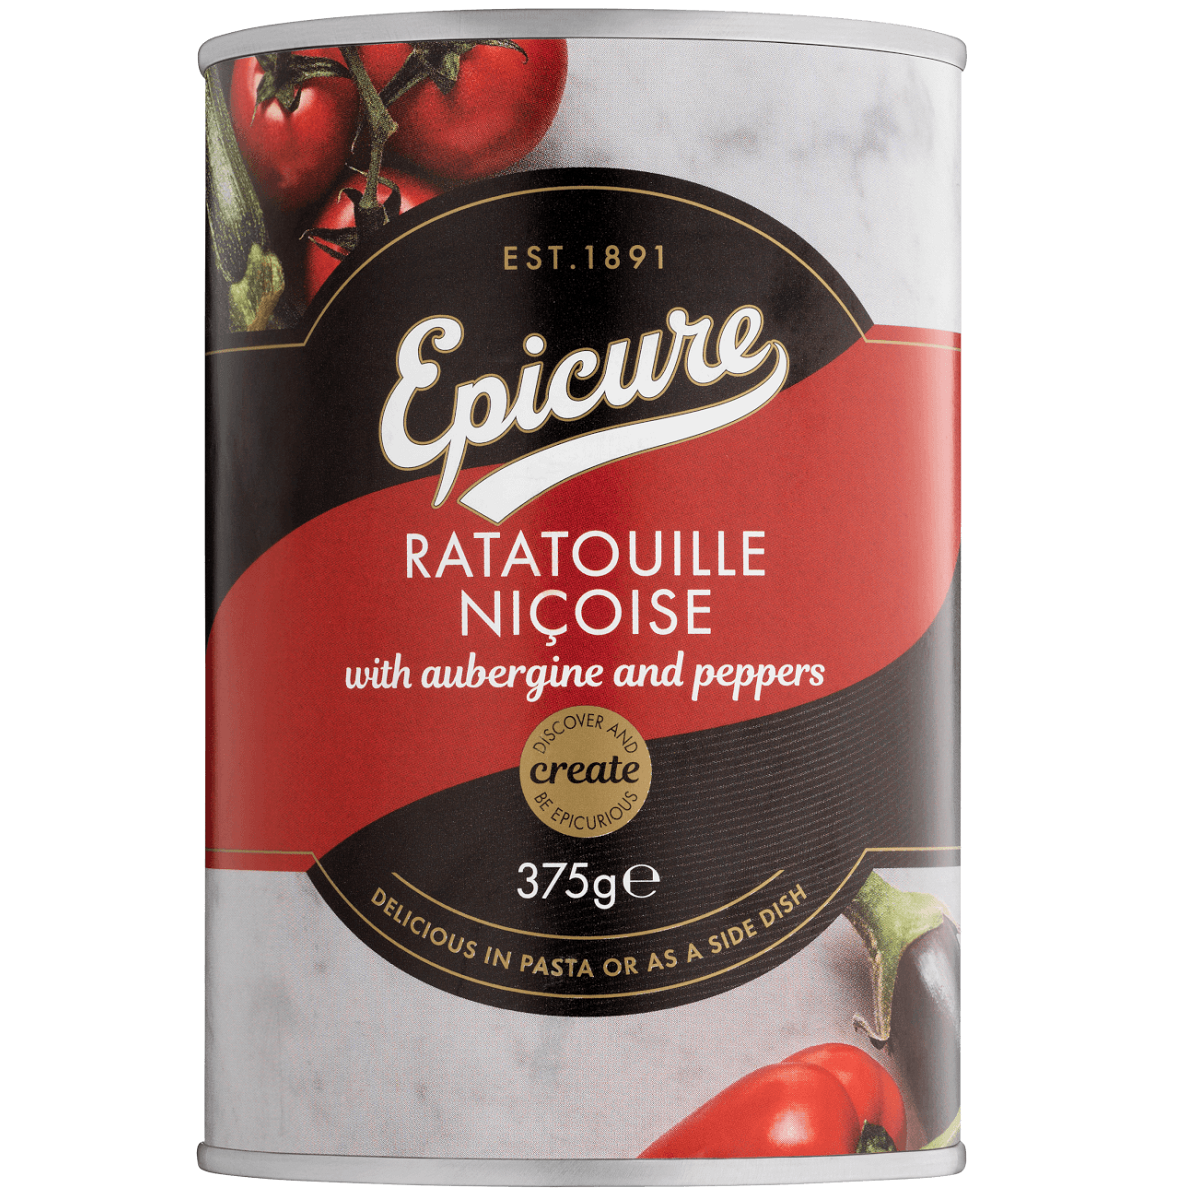 Epicure Ratatouille Nicoise 375g